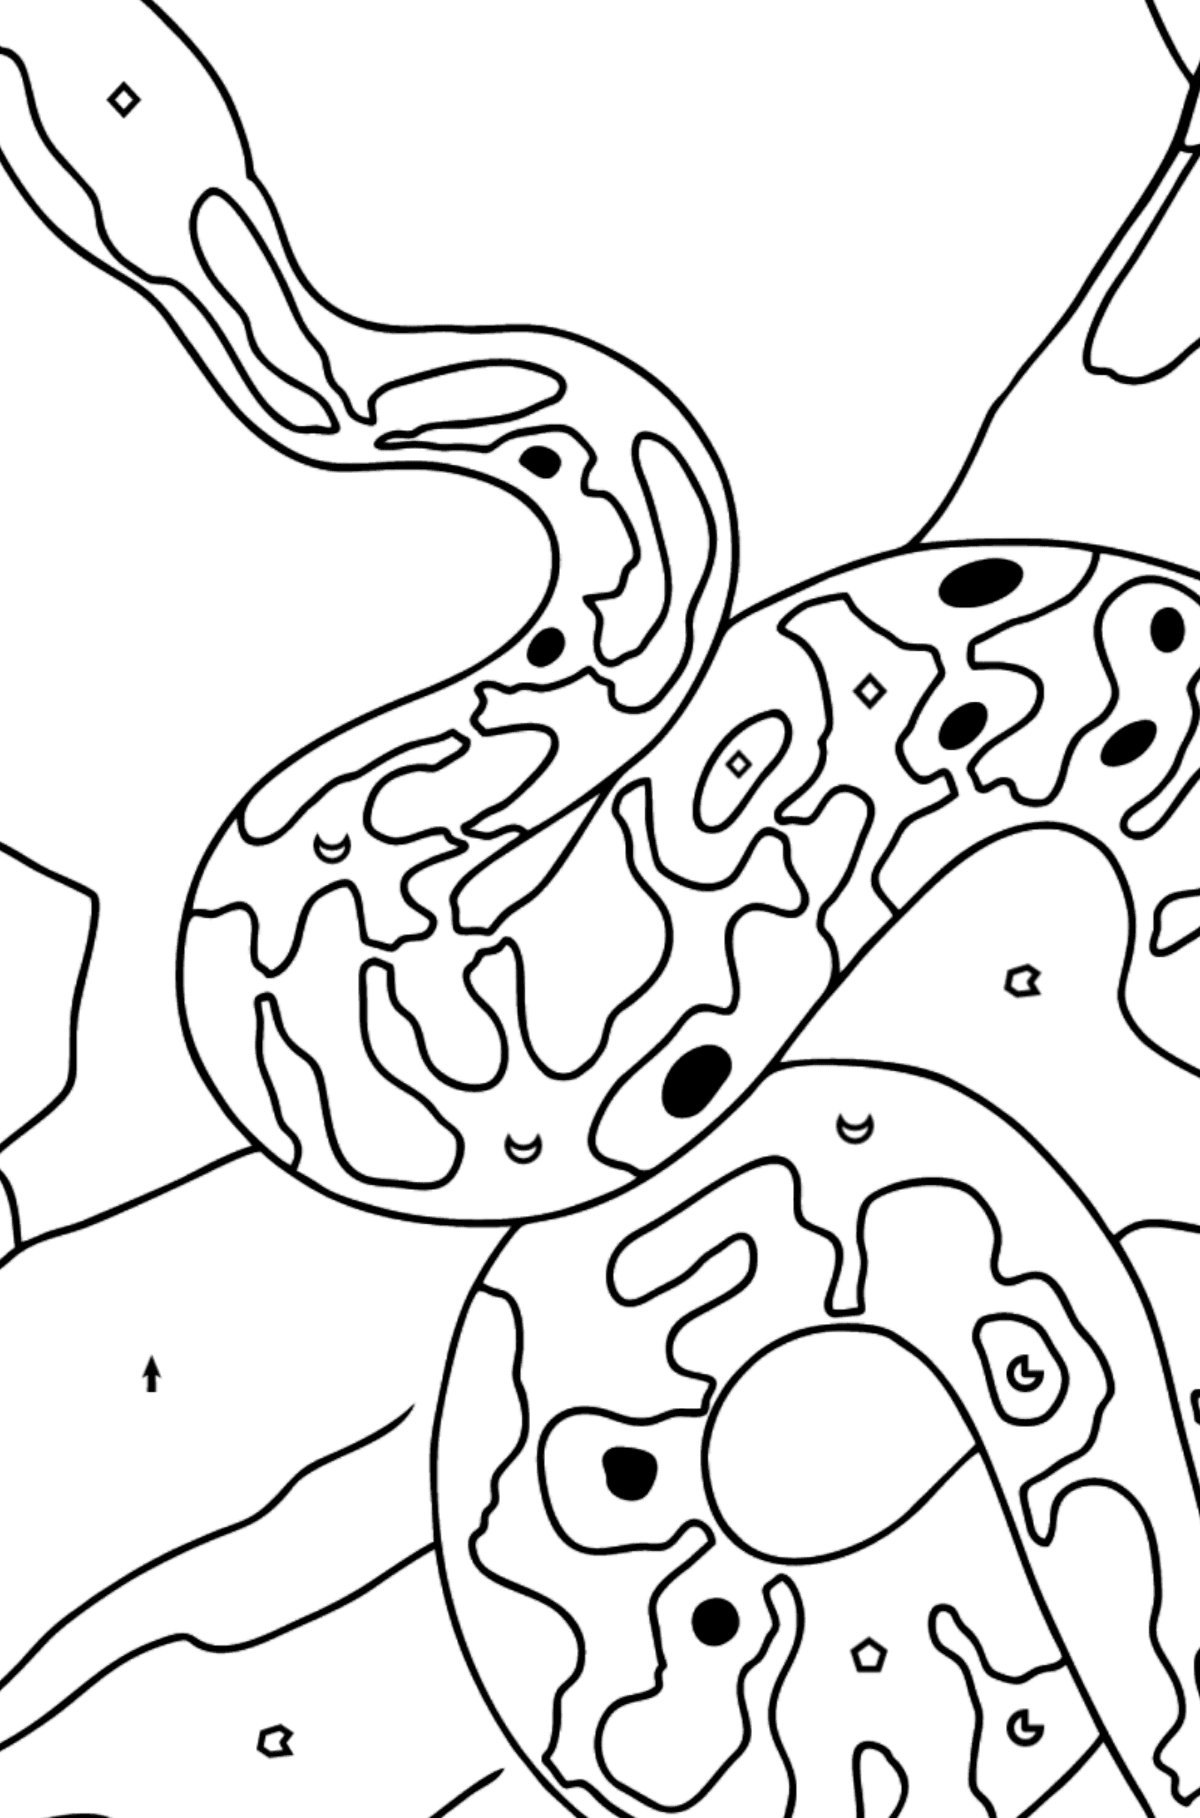 Disegno di Serpente da colorare - Colorare per simboli e forme geometriche per bambini